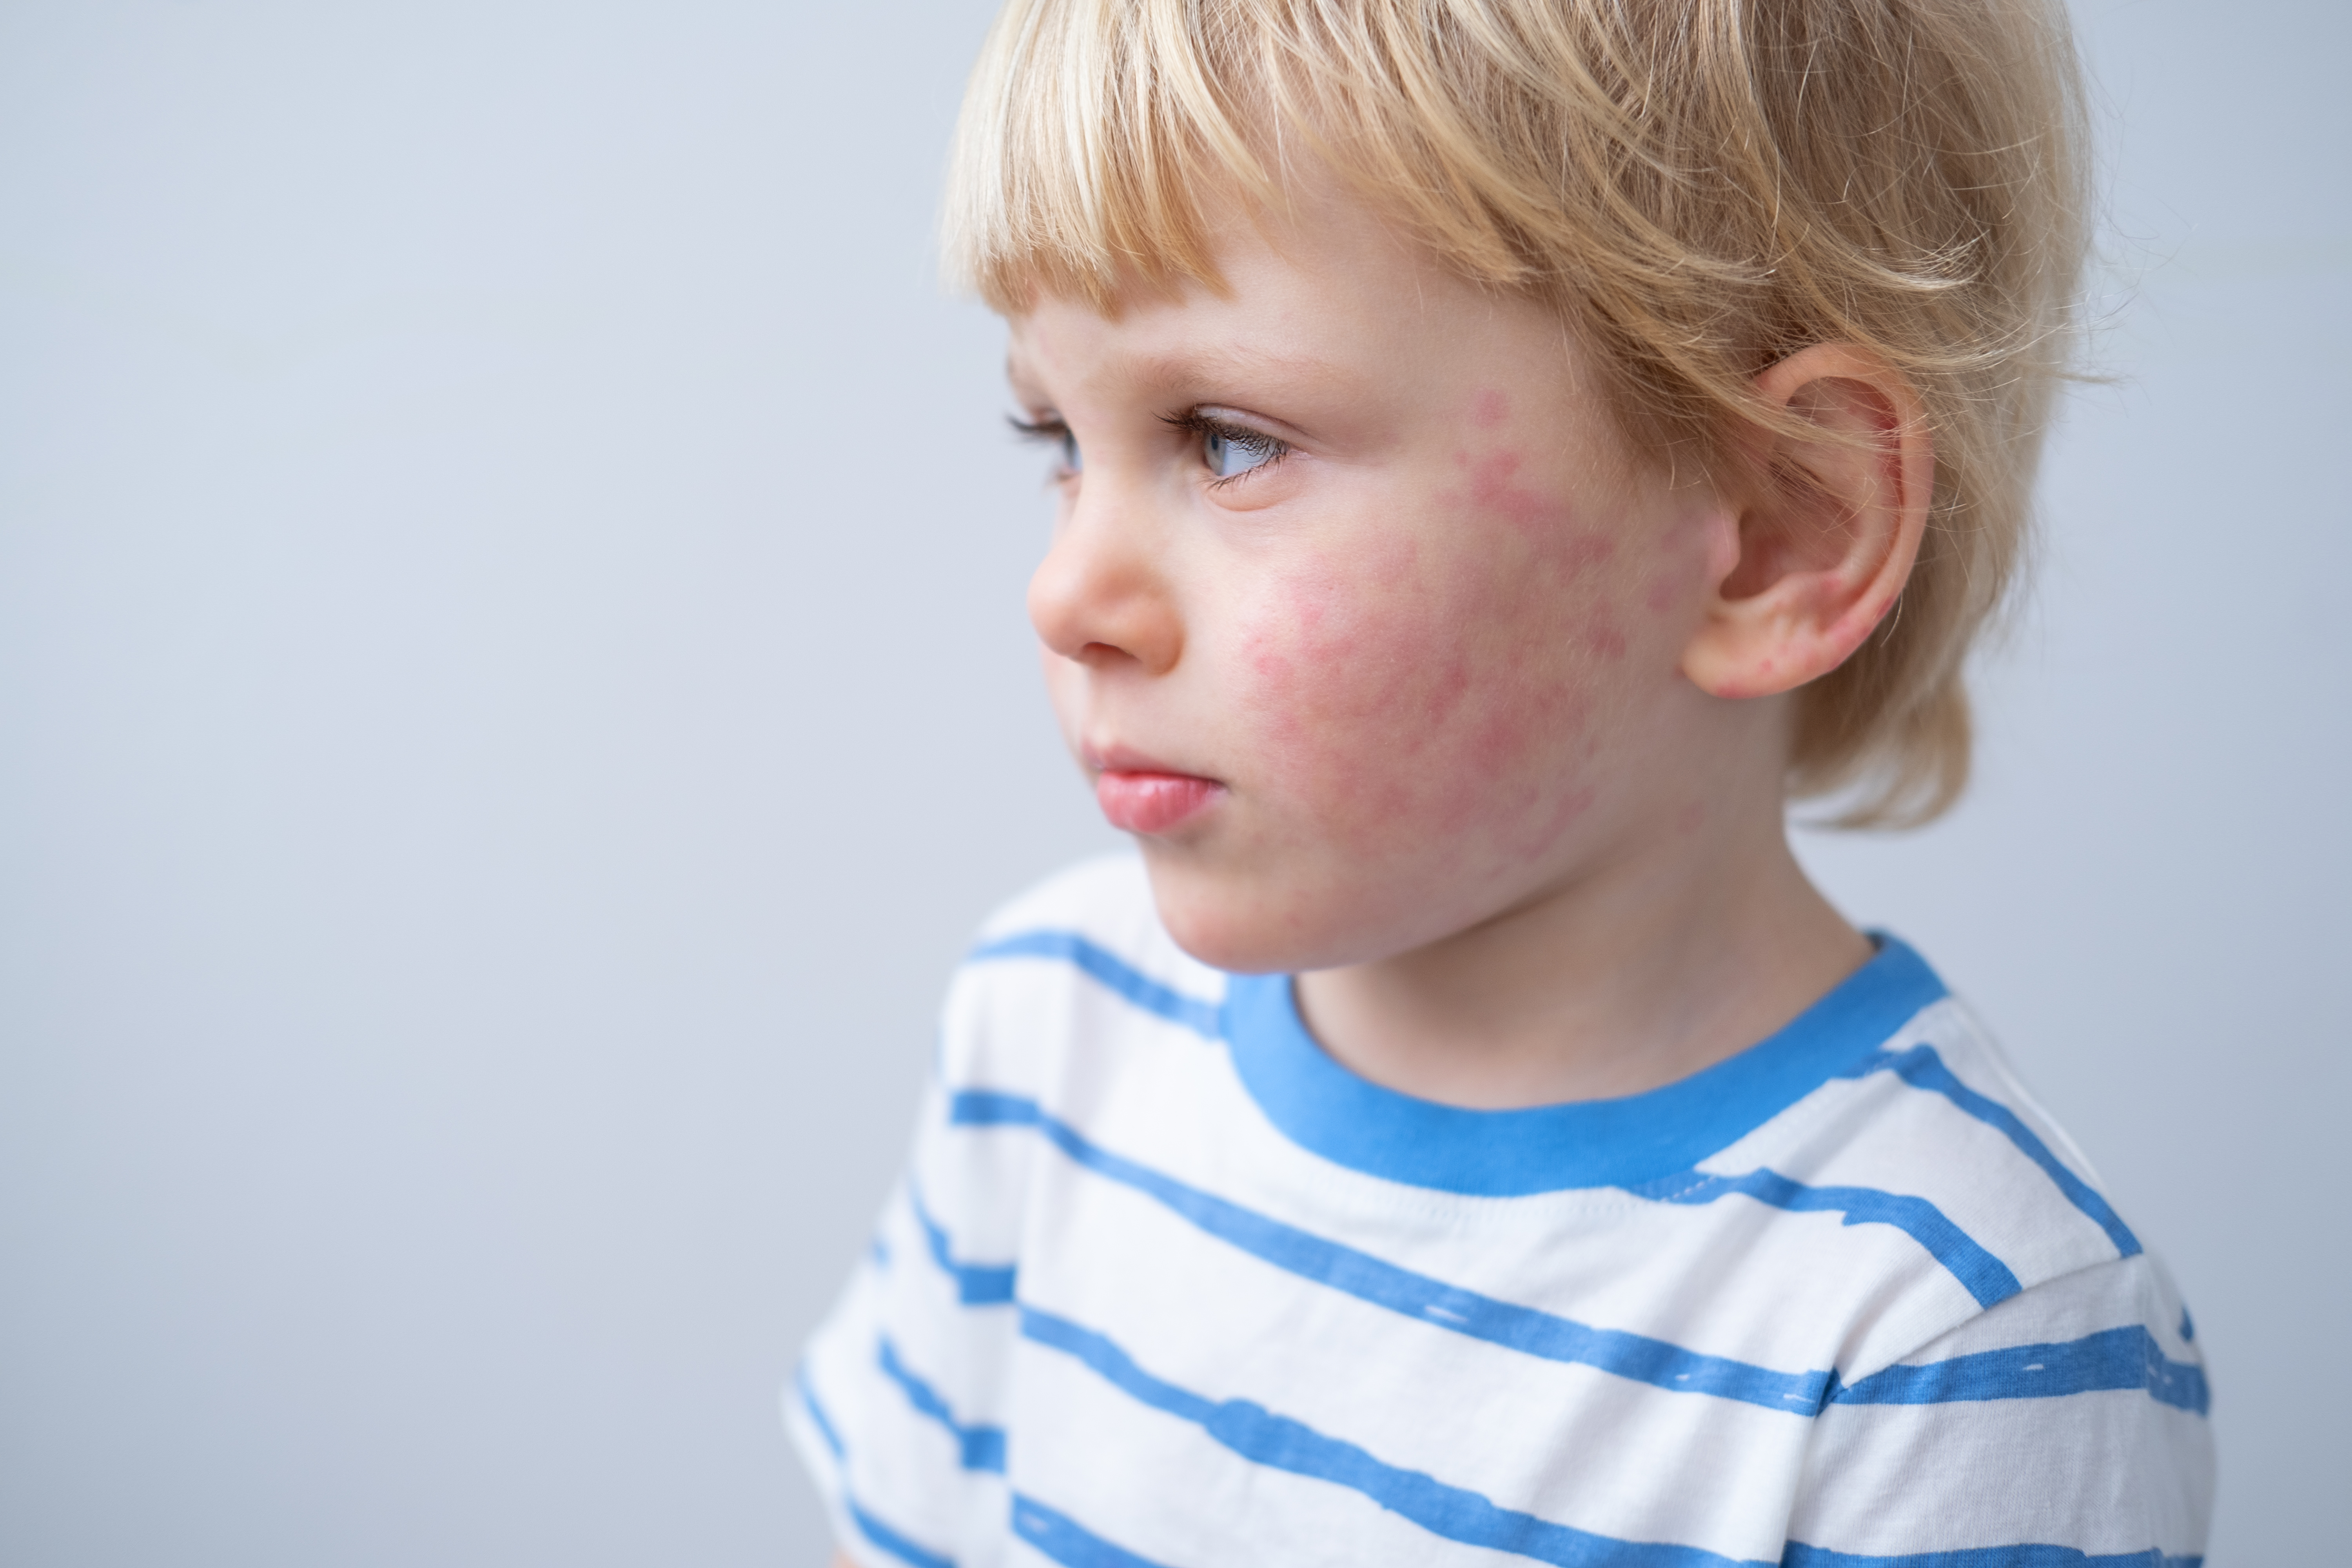 Skin rash Causes